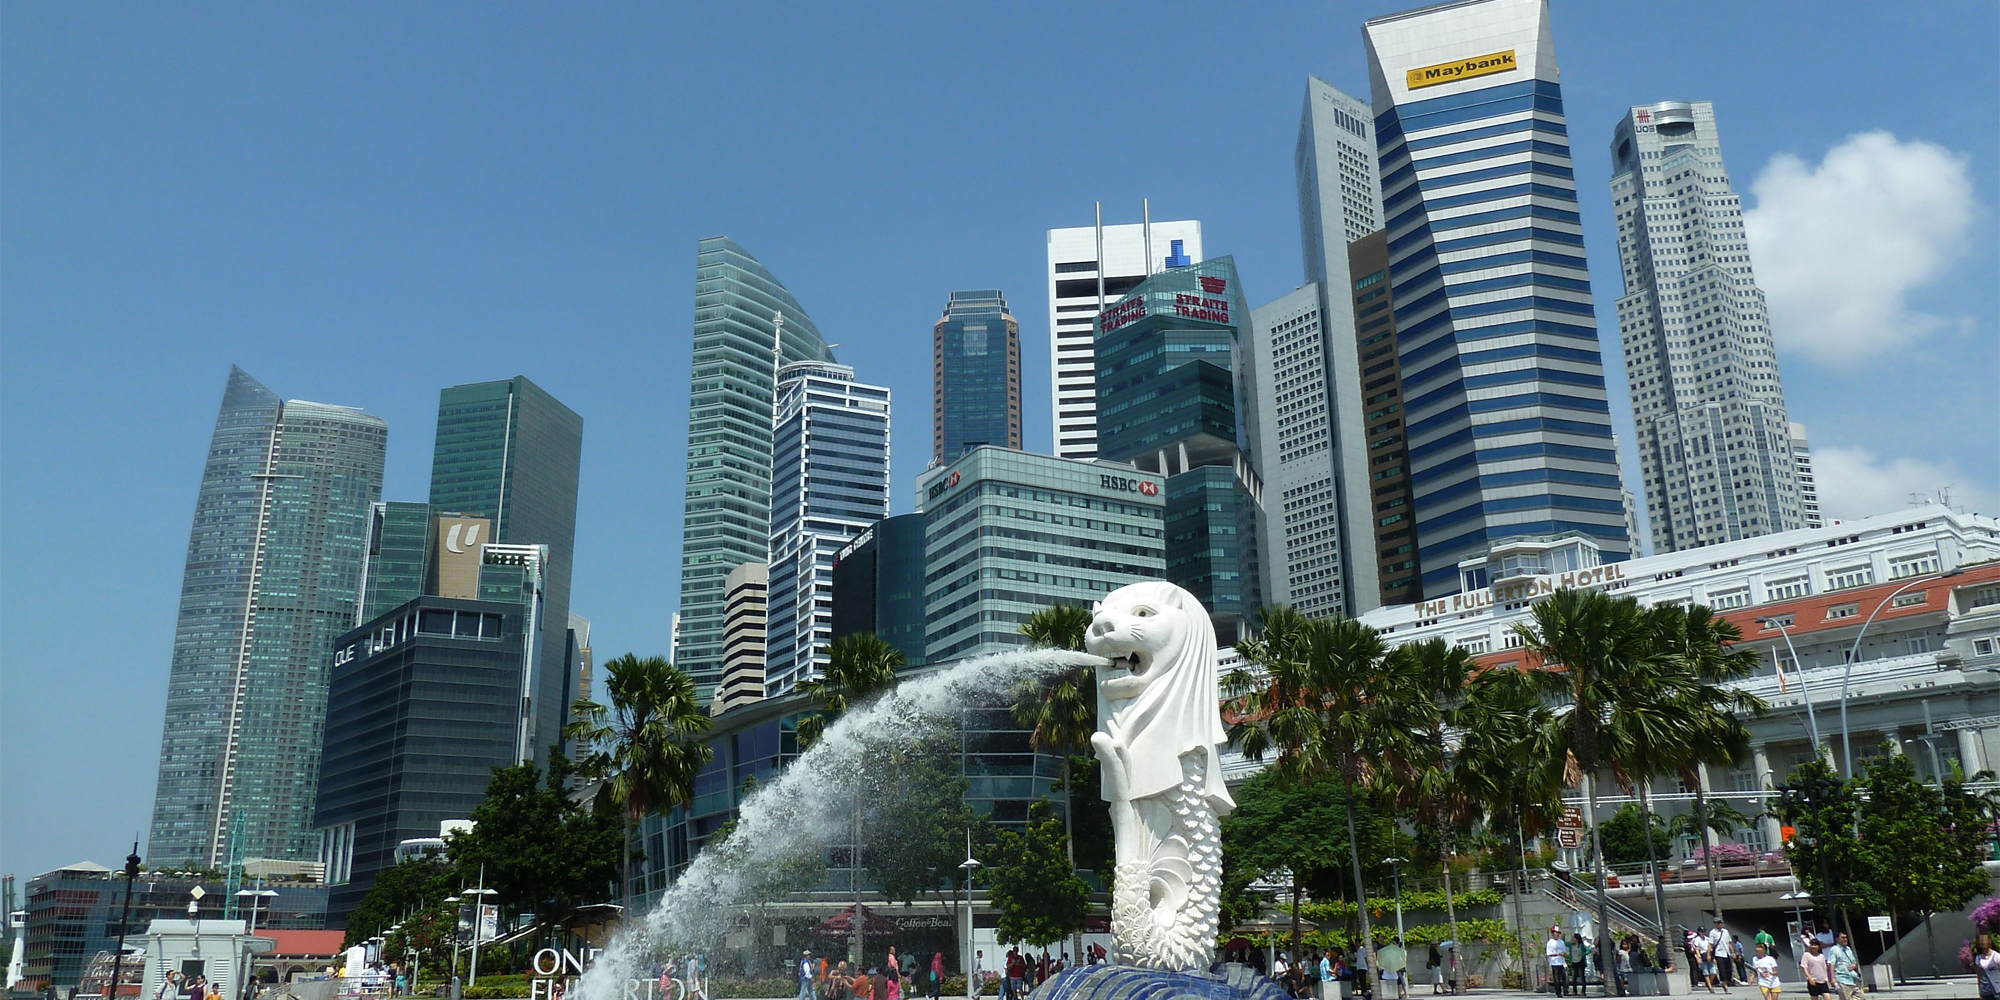 シンガポールは電子申請時におけるBIM利用の義務化を導入し、今では国土全体のBIM計画を発表しています。